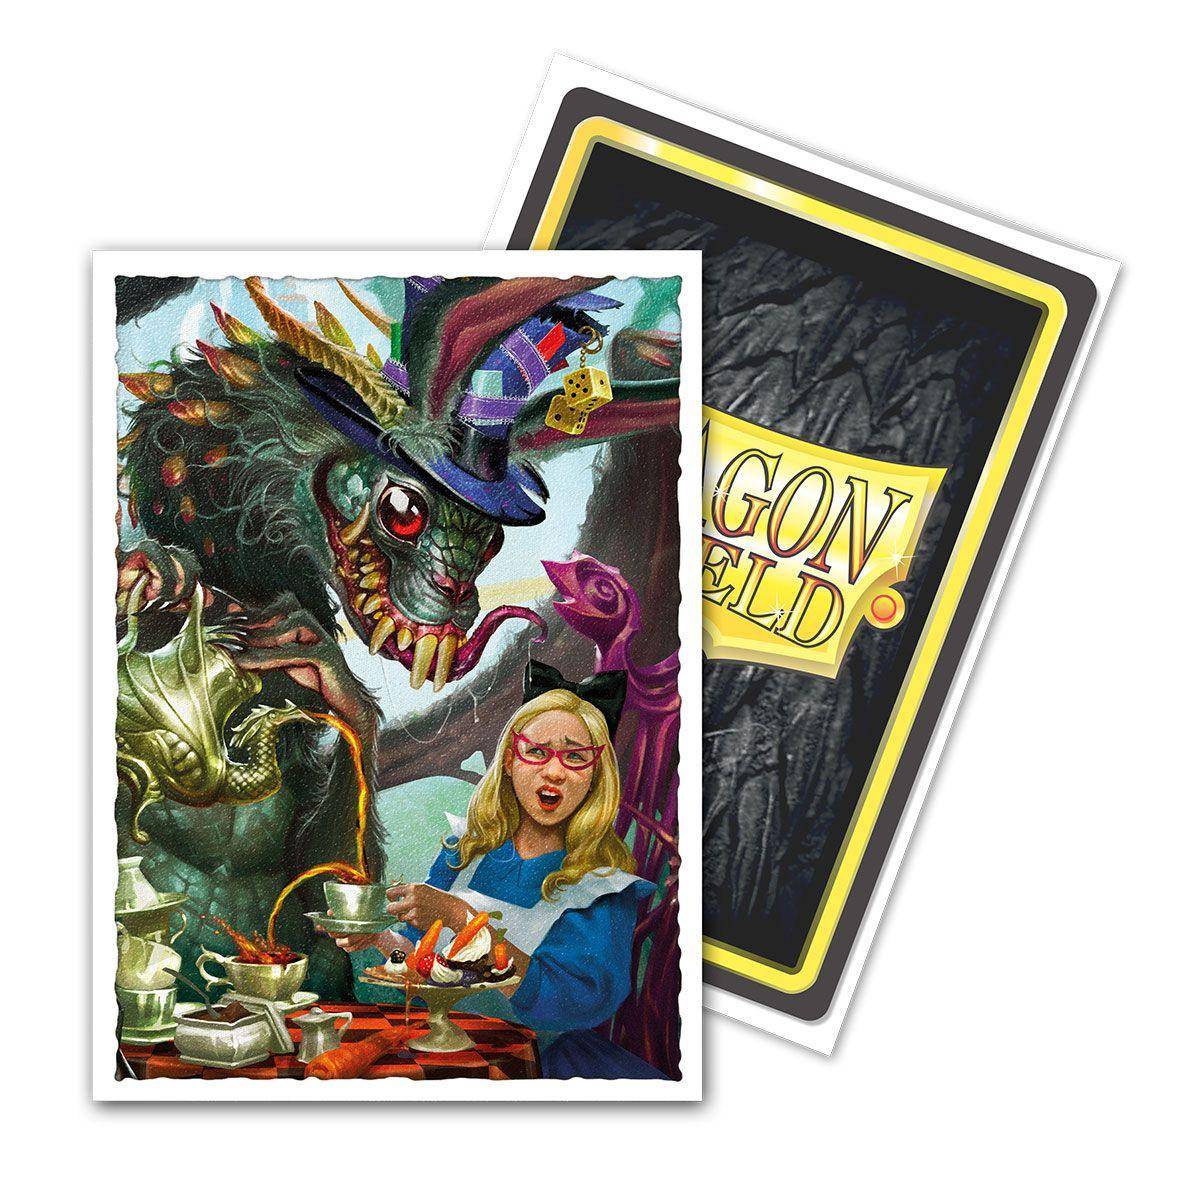 Dragon Shield Matte Art Kartenhüllen - Easter Dragon 2021 (100 Kartenhüllen)